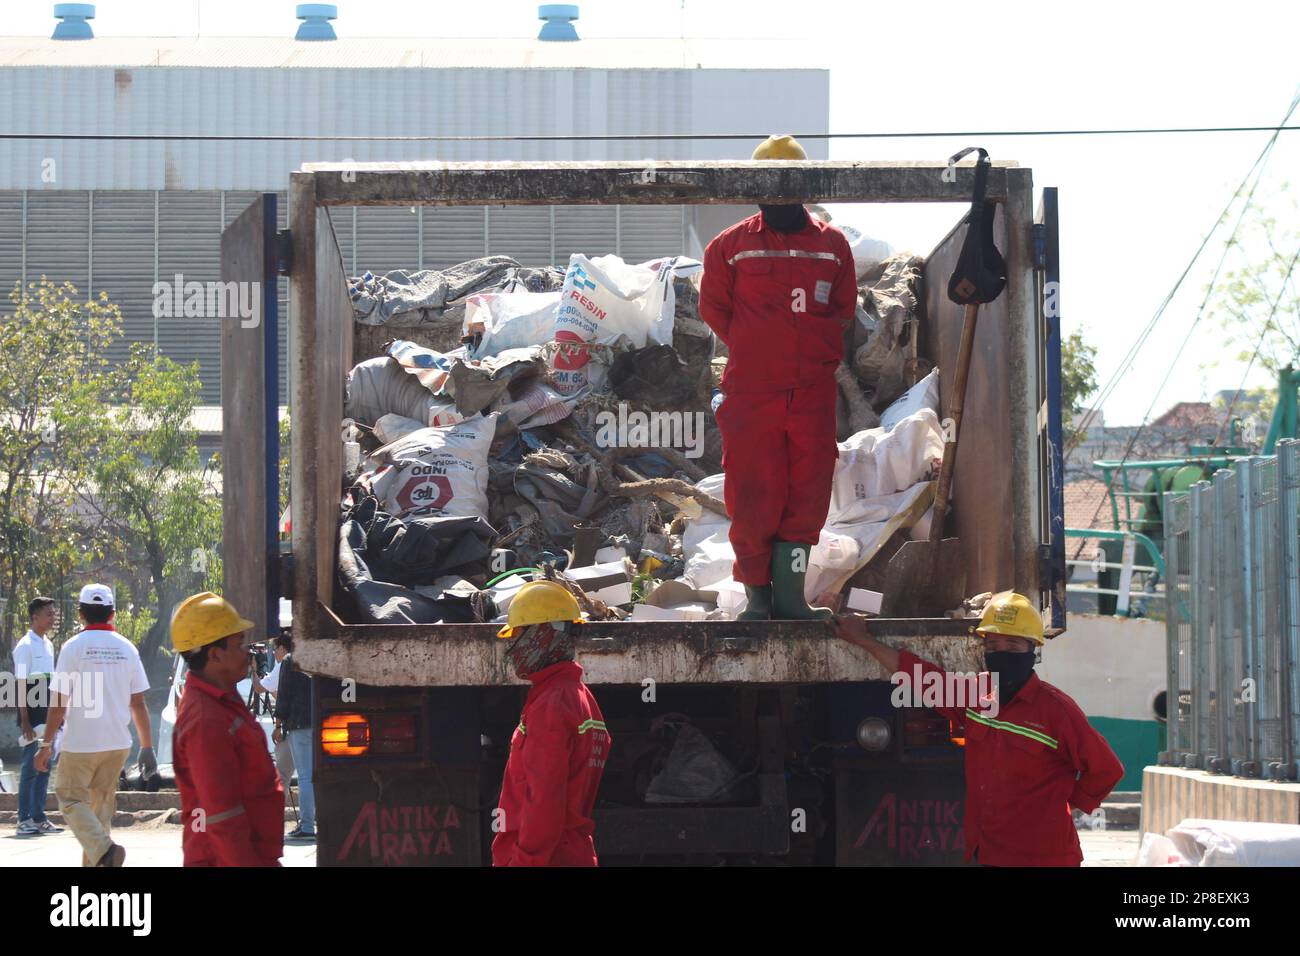 les nettoyeurs en uniforme ramassant les déchets dans un camion à ordures dans la zone portuaire Banque D'Images